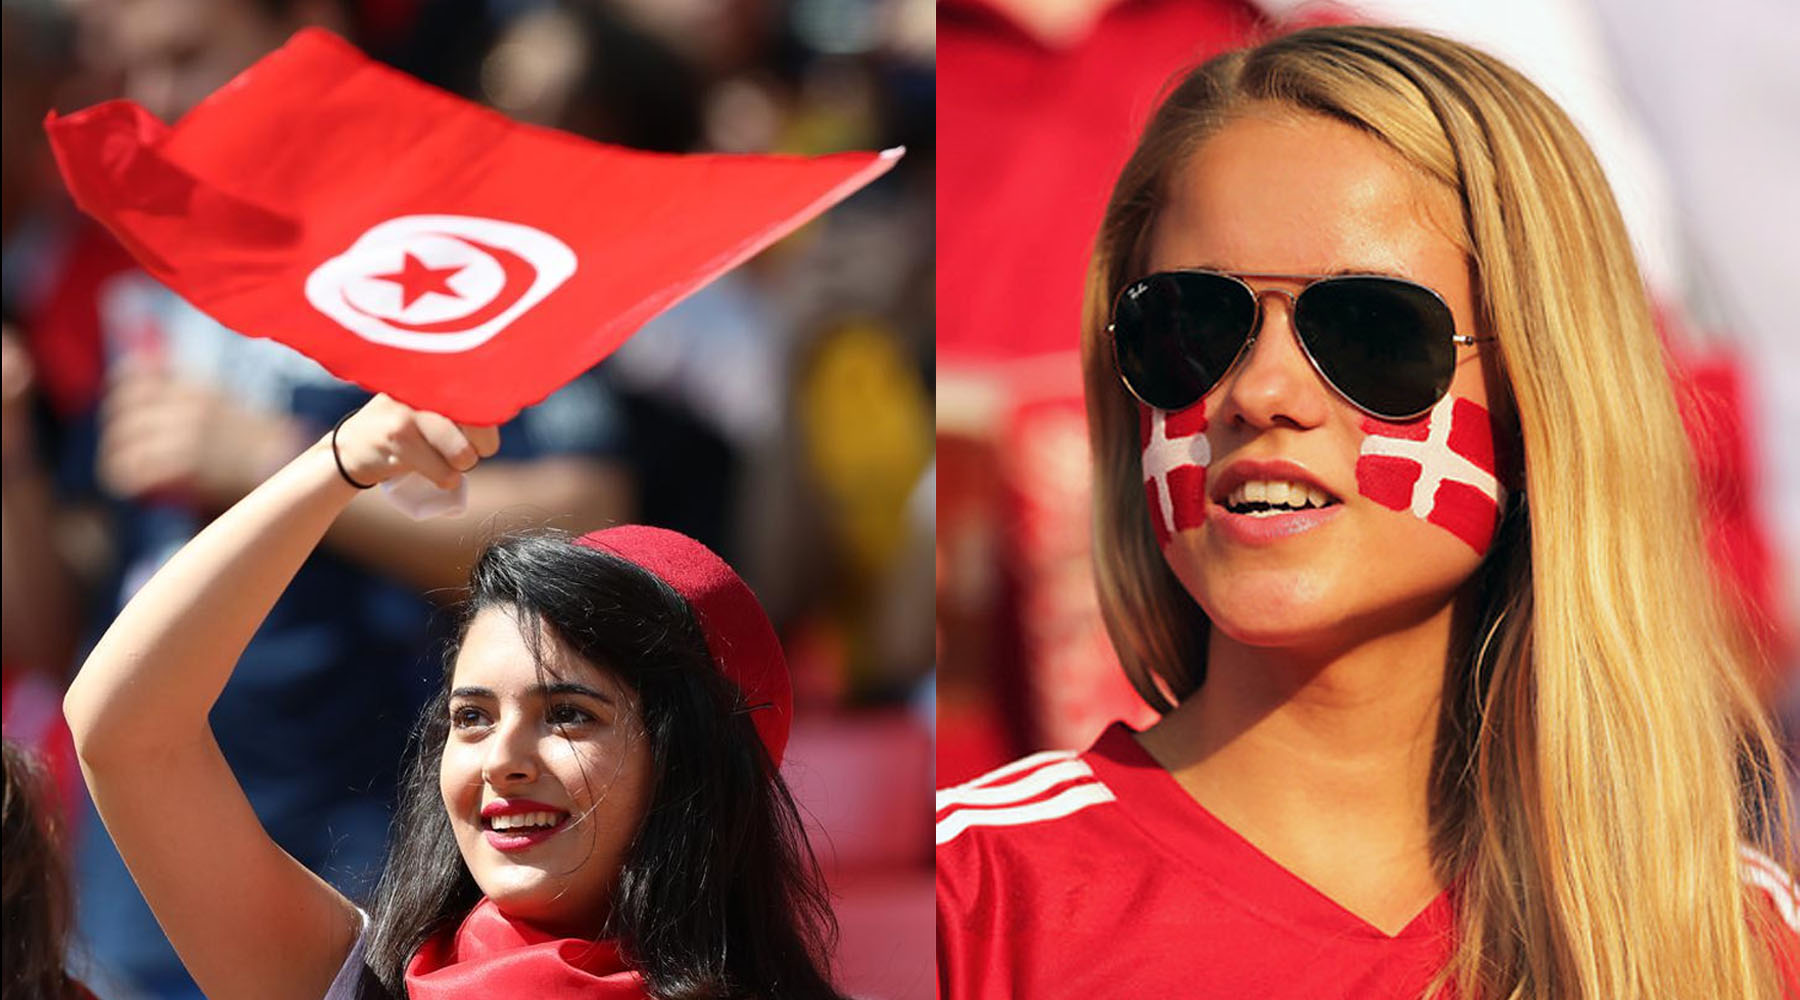 شرط بندی بازی تونس و دانمارک جام جهانی ۲۰۲۲ قطر با ضریب بالا